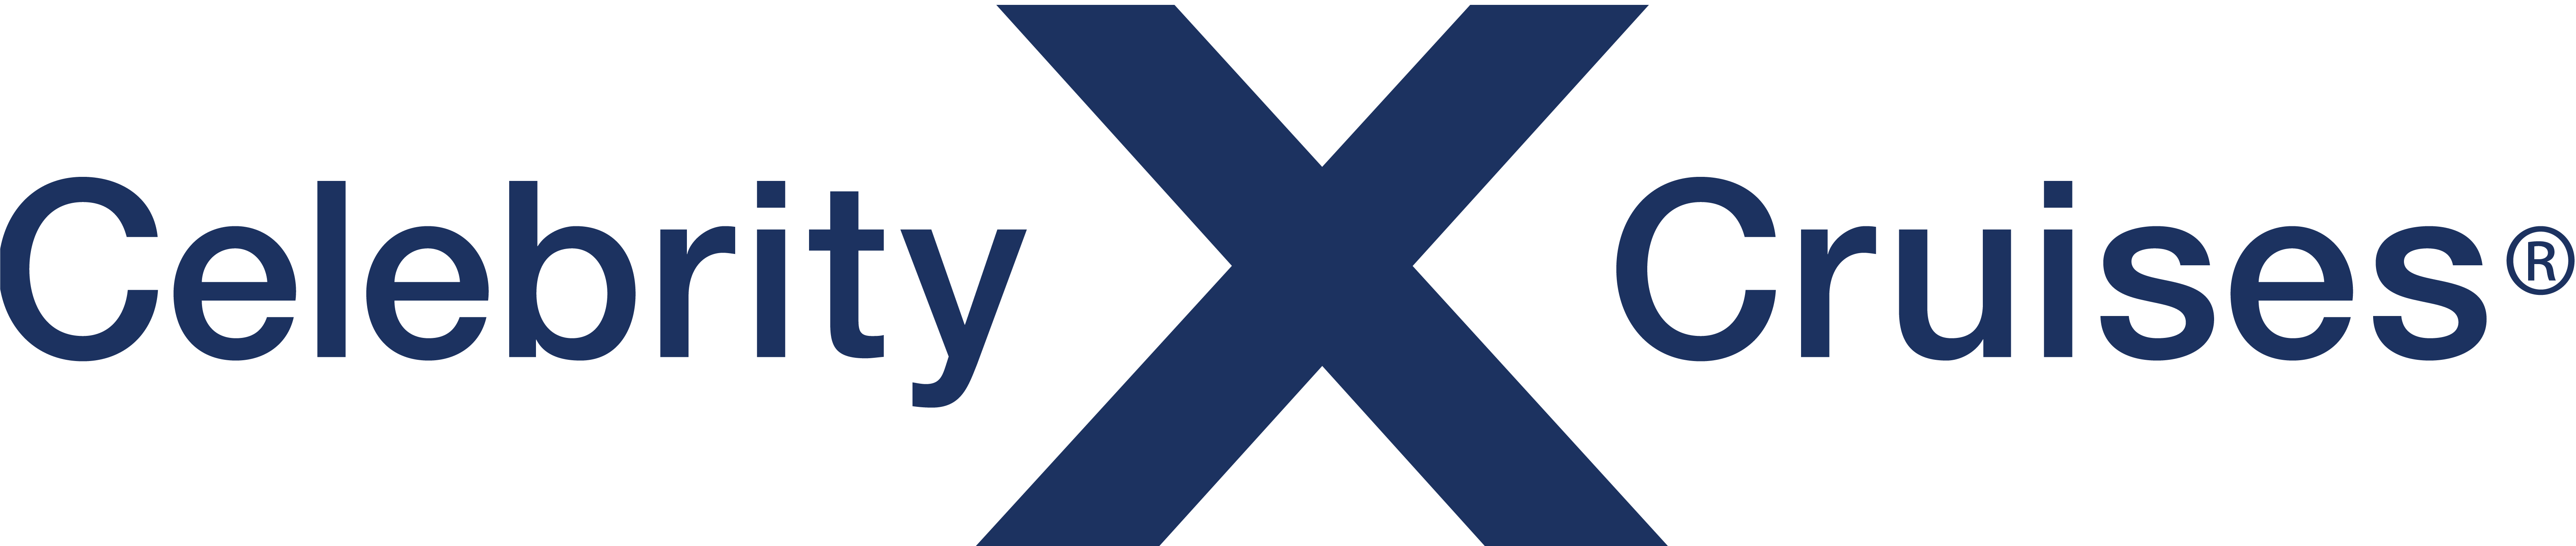 Celebrity Summit Reederei Logo